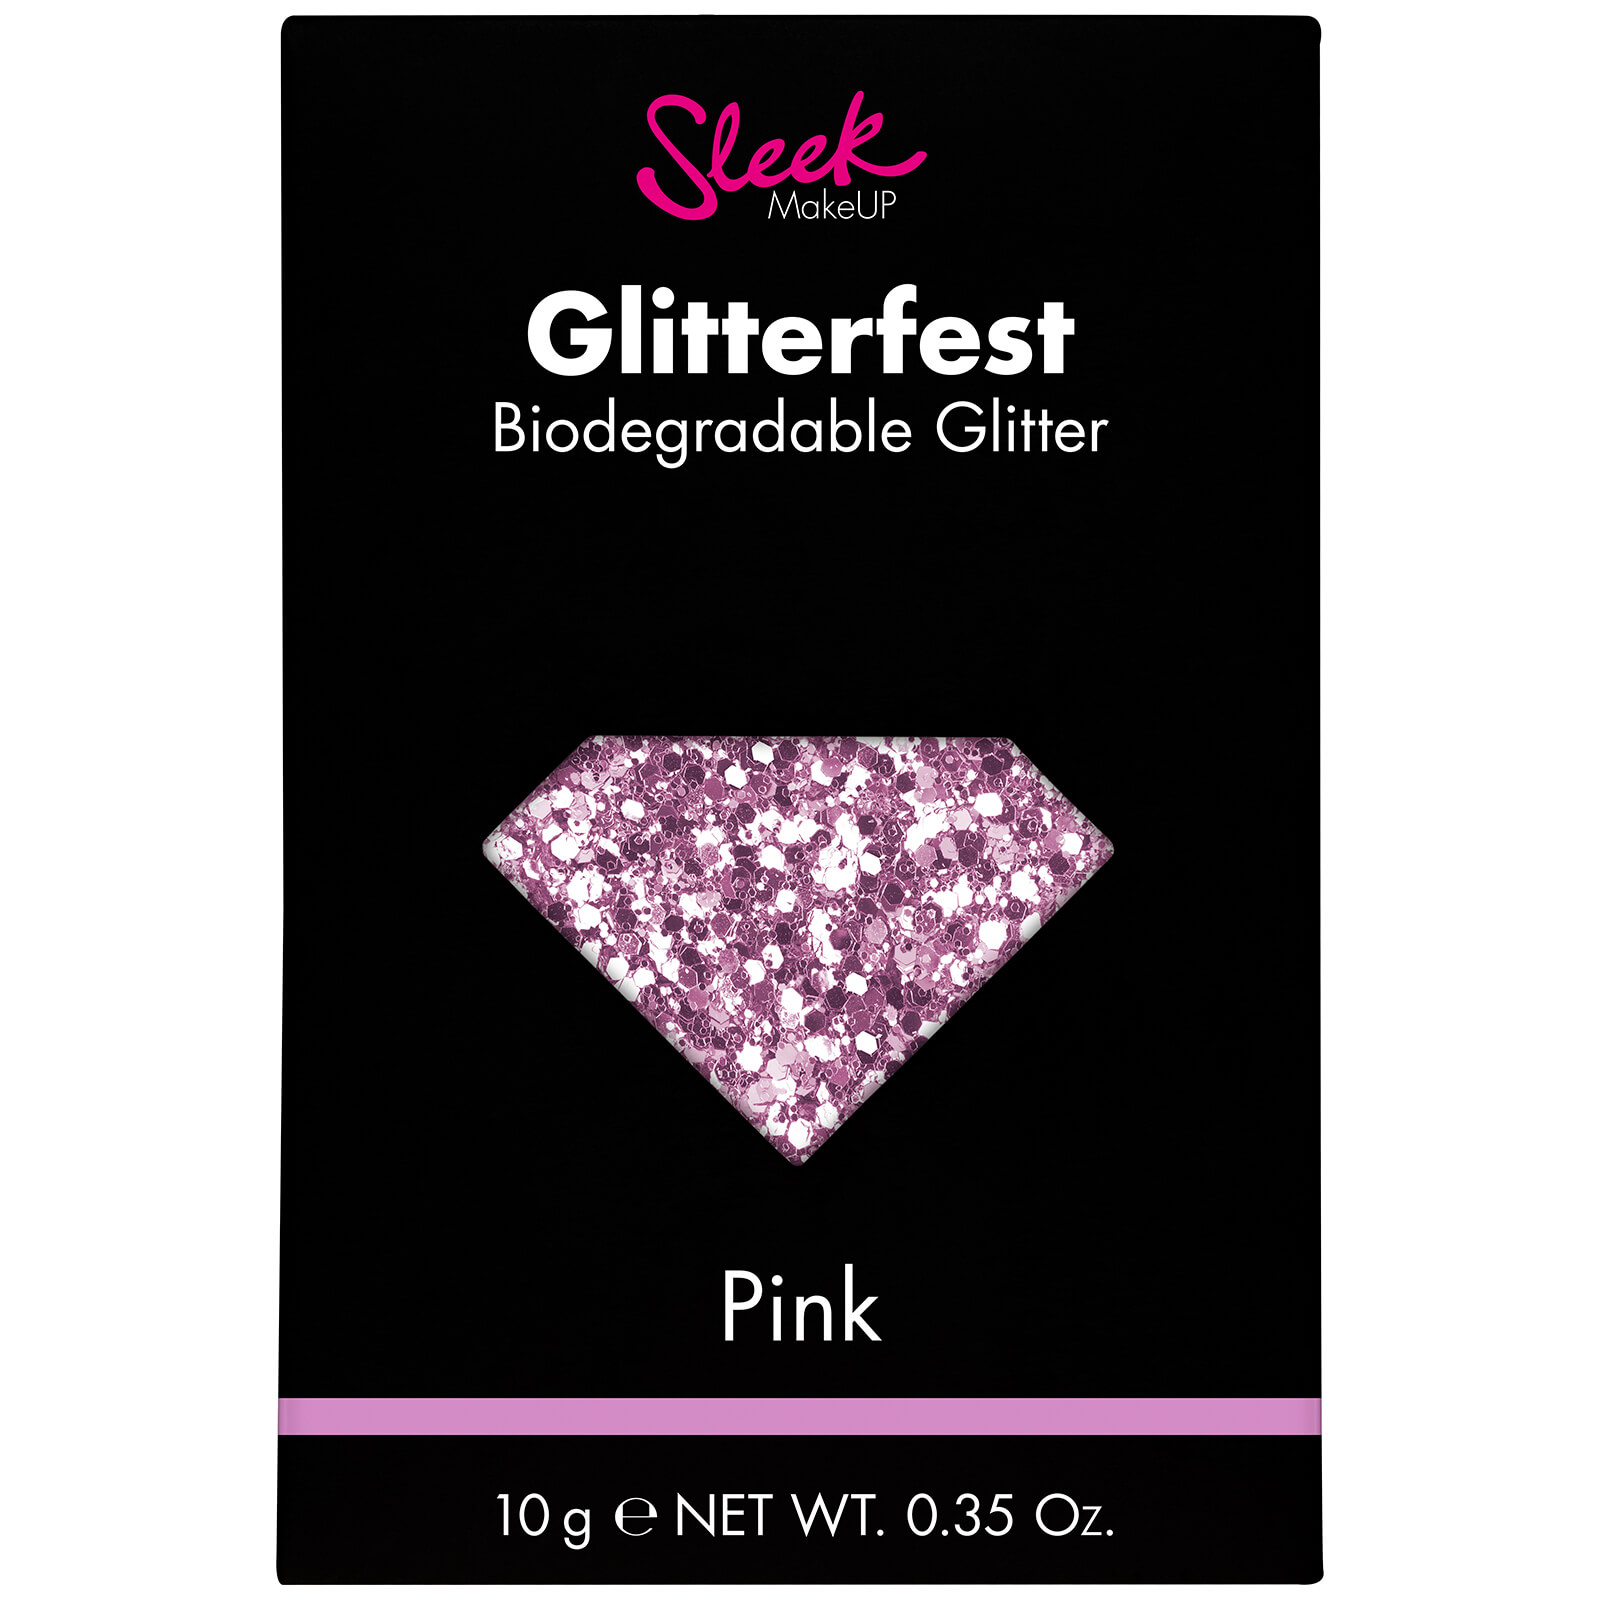 Brillantina biodegradable Glitterfest de Sleek MakeUP - Rosa 10 g